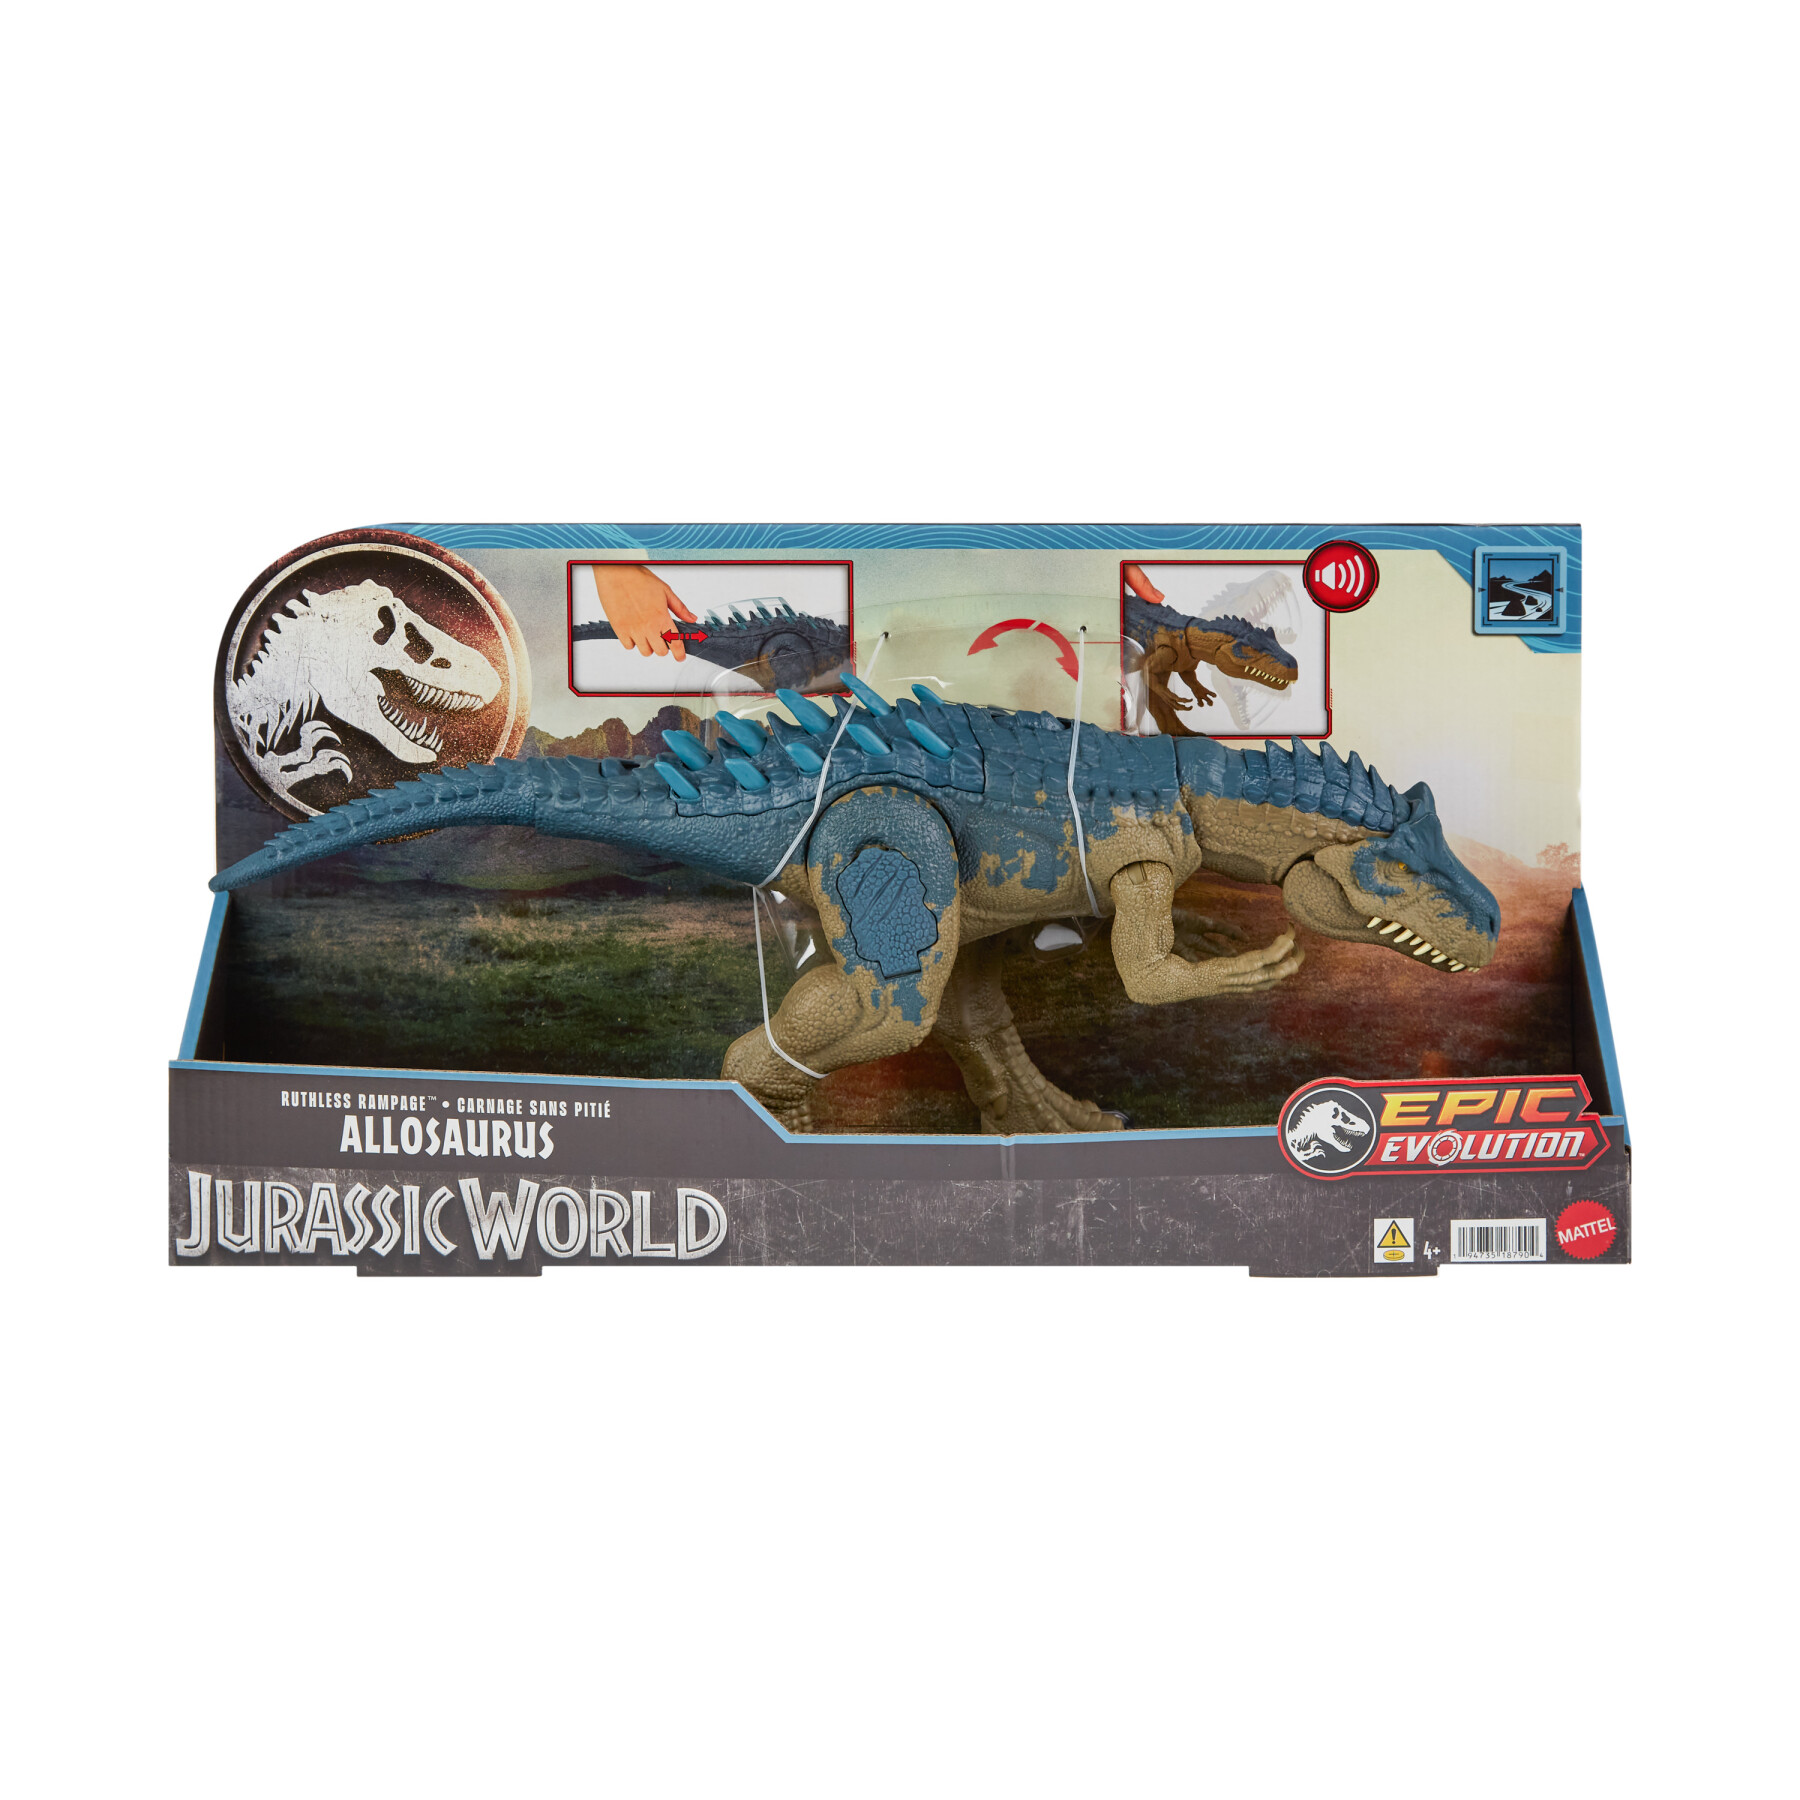 Jurassic world - allosauro furia selvaggia, dinosauro con aculei da combattimento e ruggito, azione d'attacco con il collo e morso attivabili con il pulsante - Jurassic World